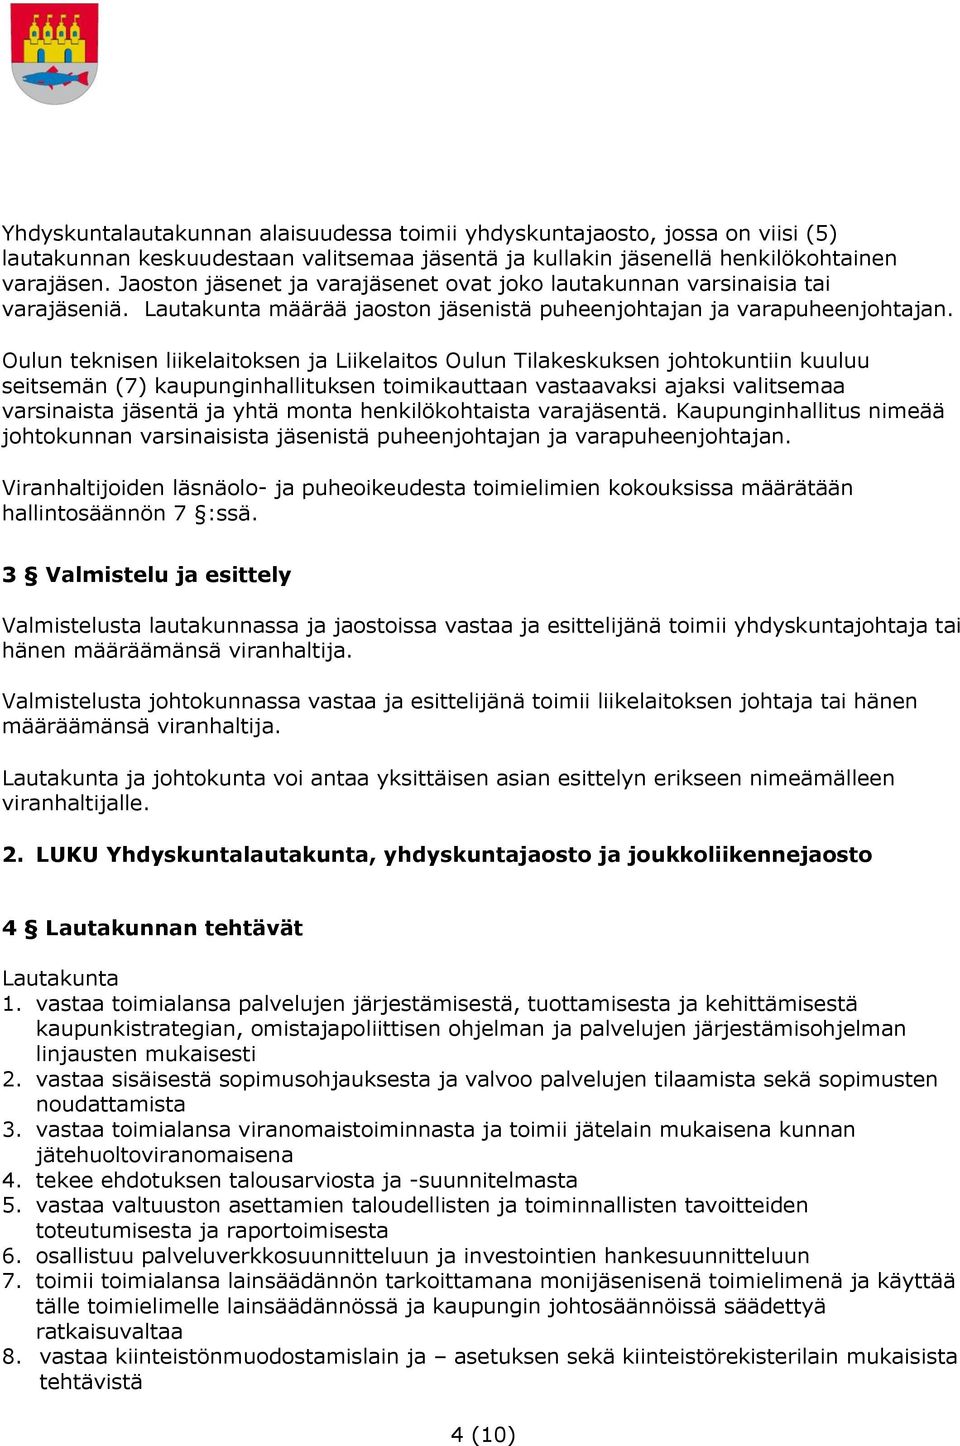 Oulun teknisen liikelaitoksen ja Liikelaitos Oulun Tilakeskuksen johtokuntiin kuuluu seitsemän (7) kaupunginhallituksen toimikauttaan vastaavaksi ajaksi valitsemaa varsinaista jäsentä ja yhtä monta